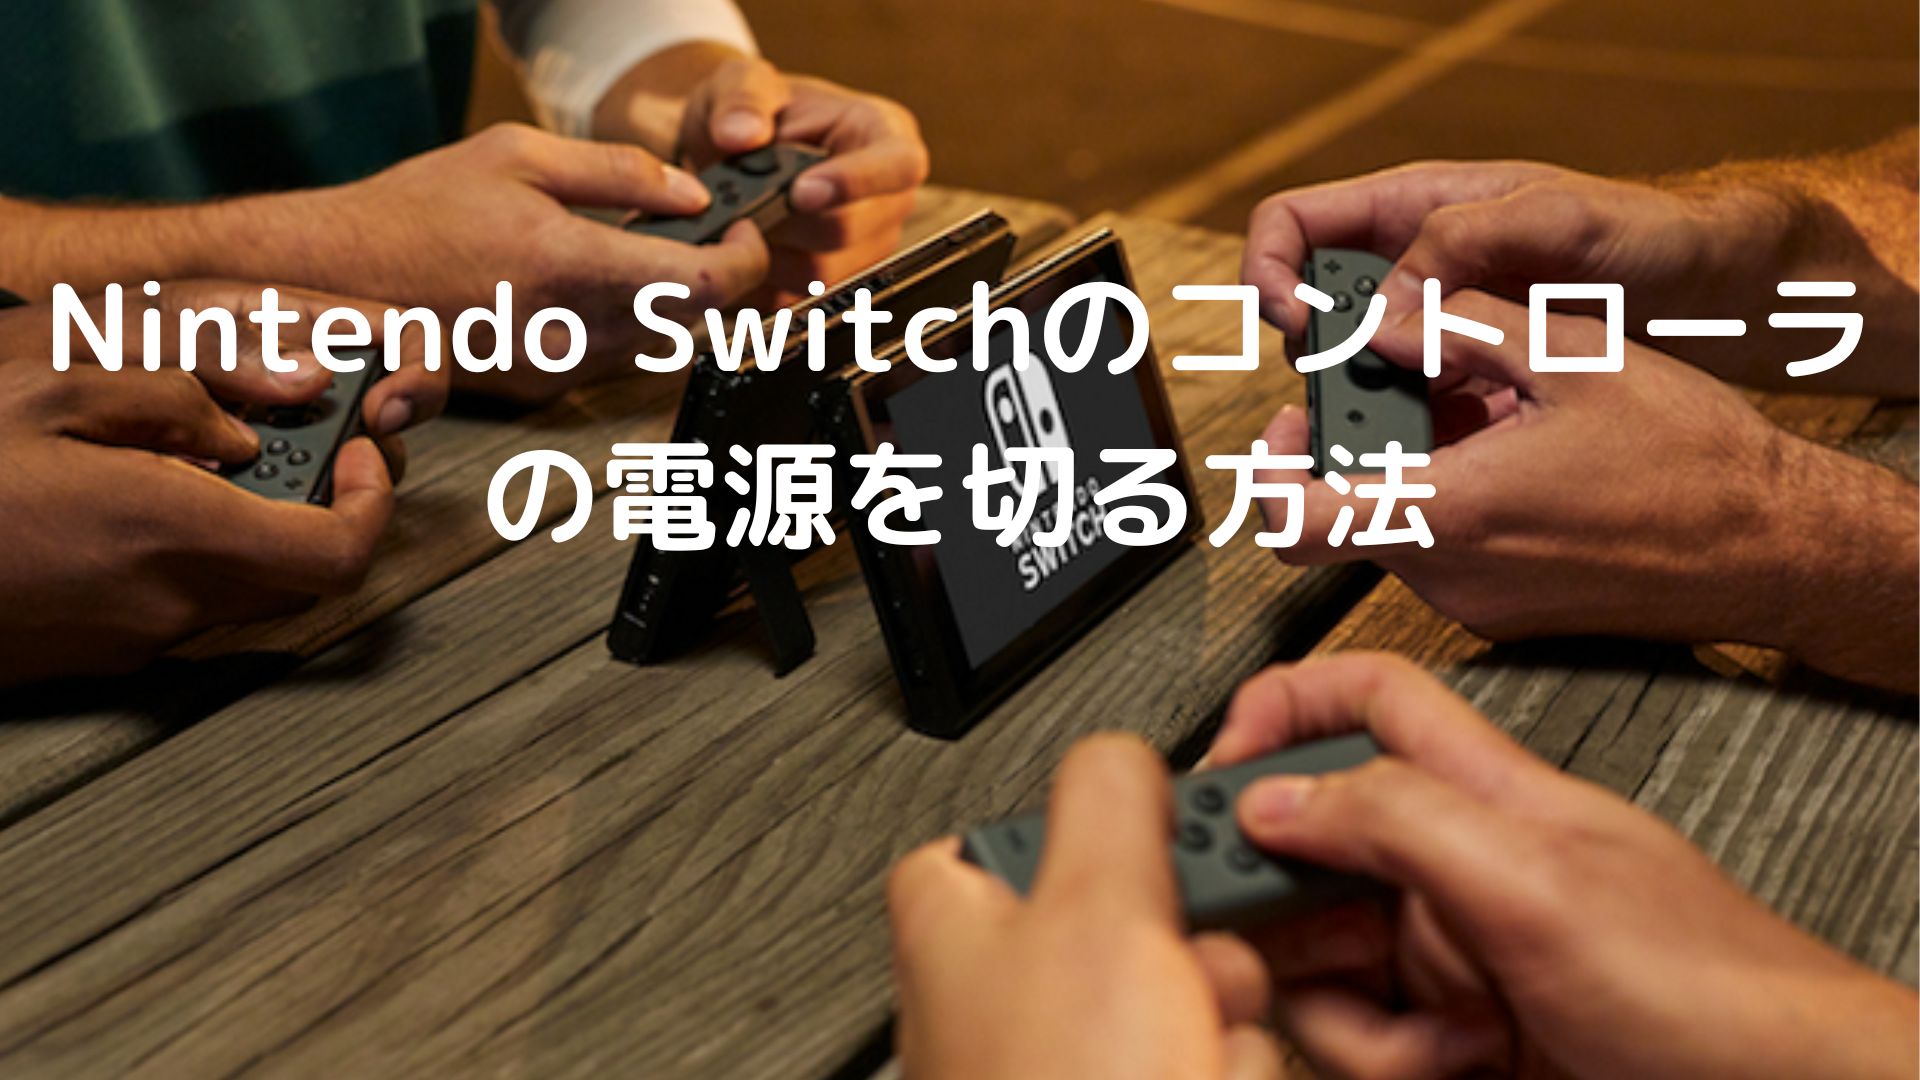 【画面付き】Nintendo Switchのコントローラの電源を切る方法を詳細解説